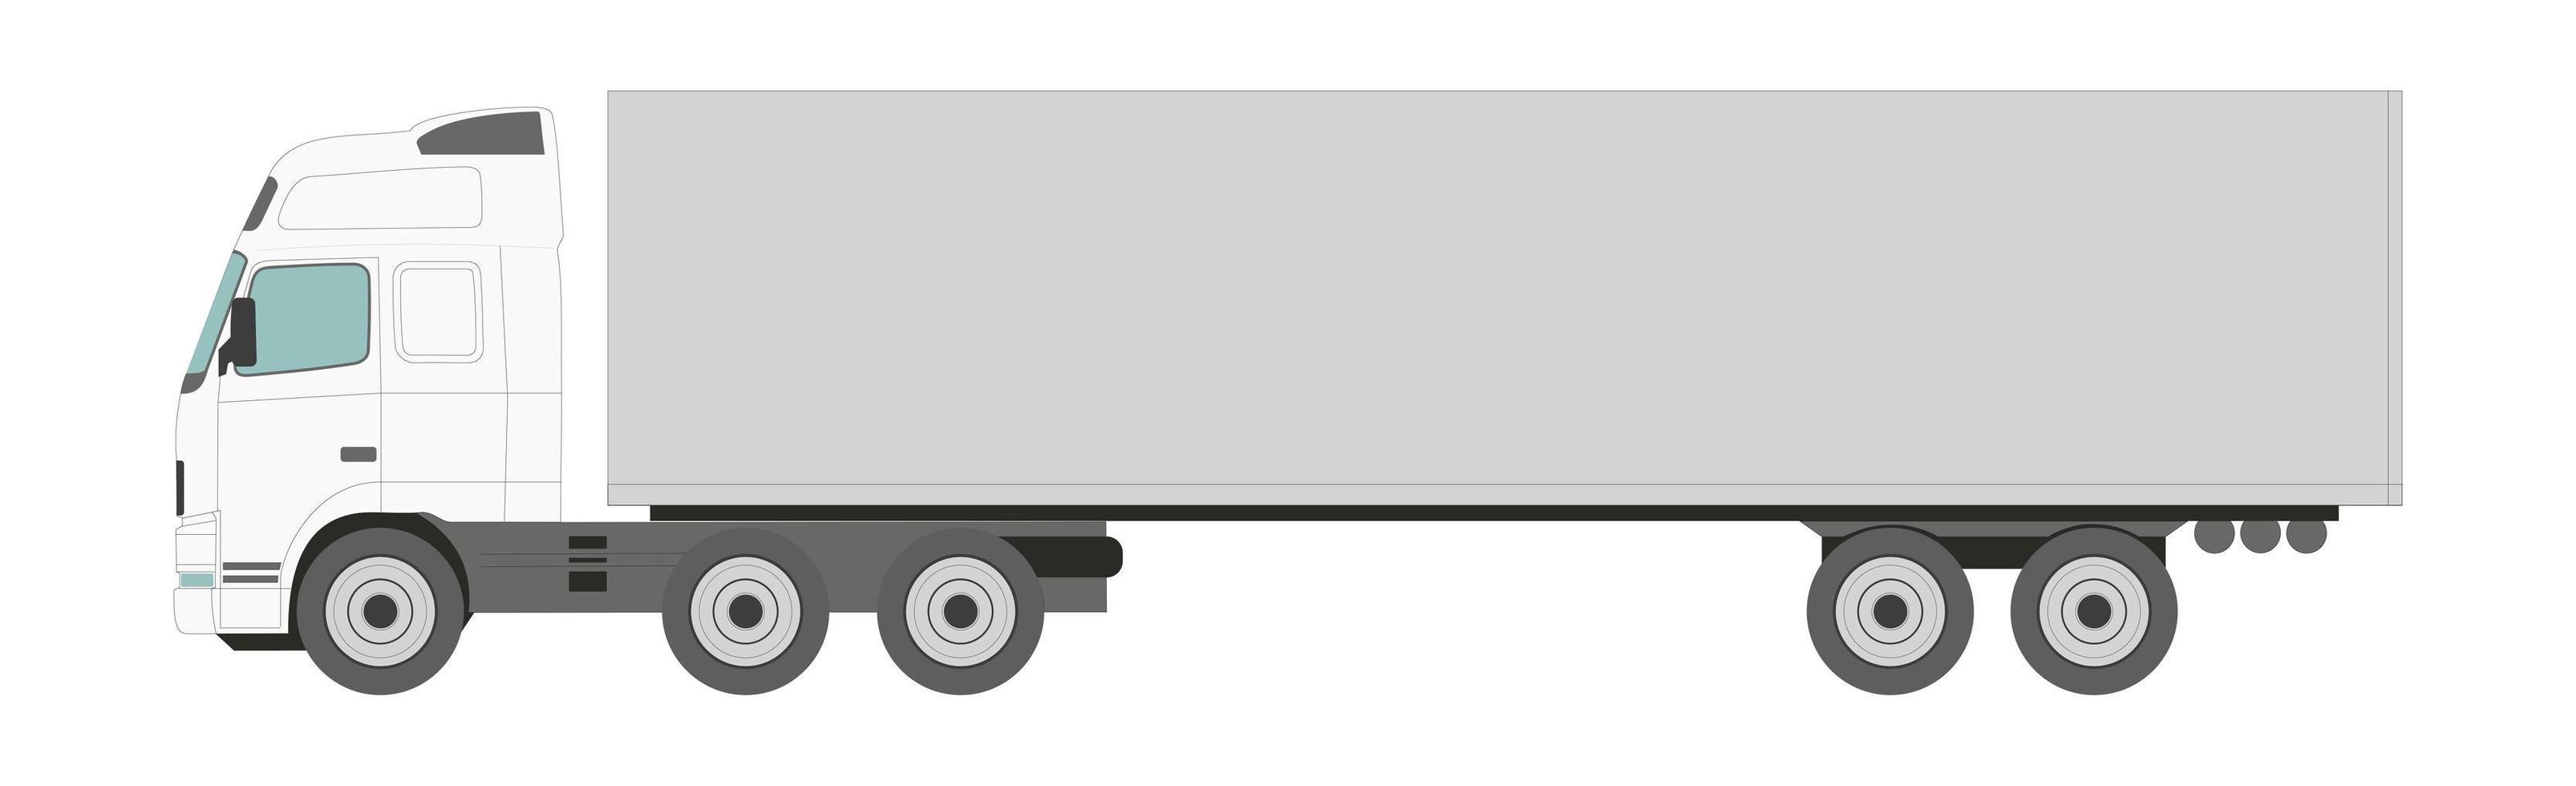 grande camion bianco con un rimorchio su sfondo chiaro - vettore